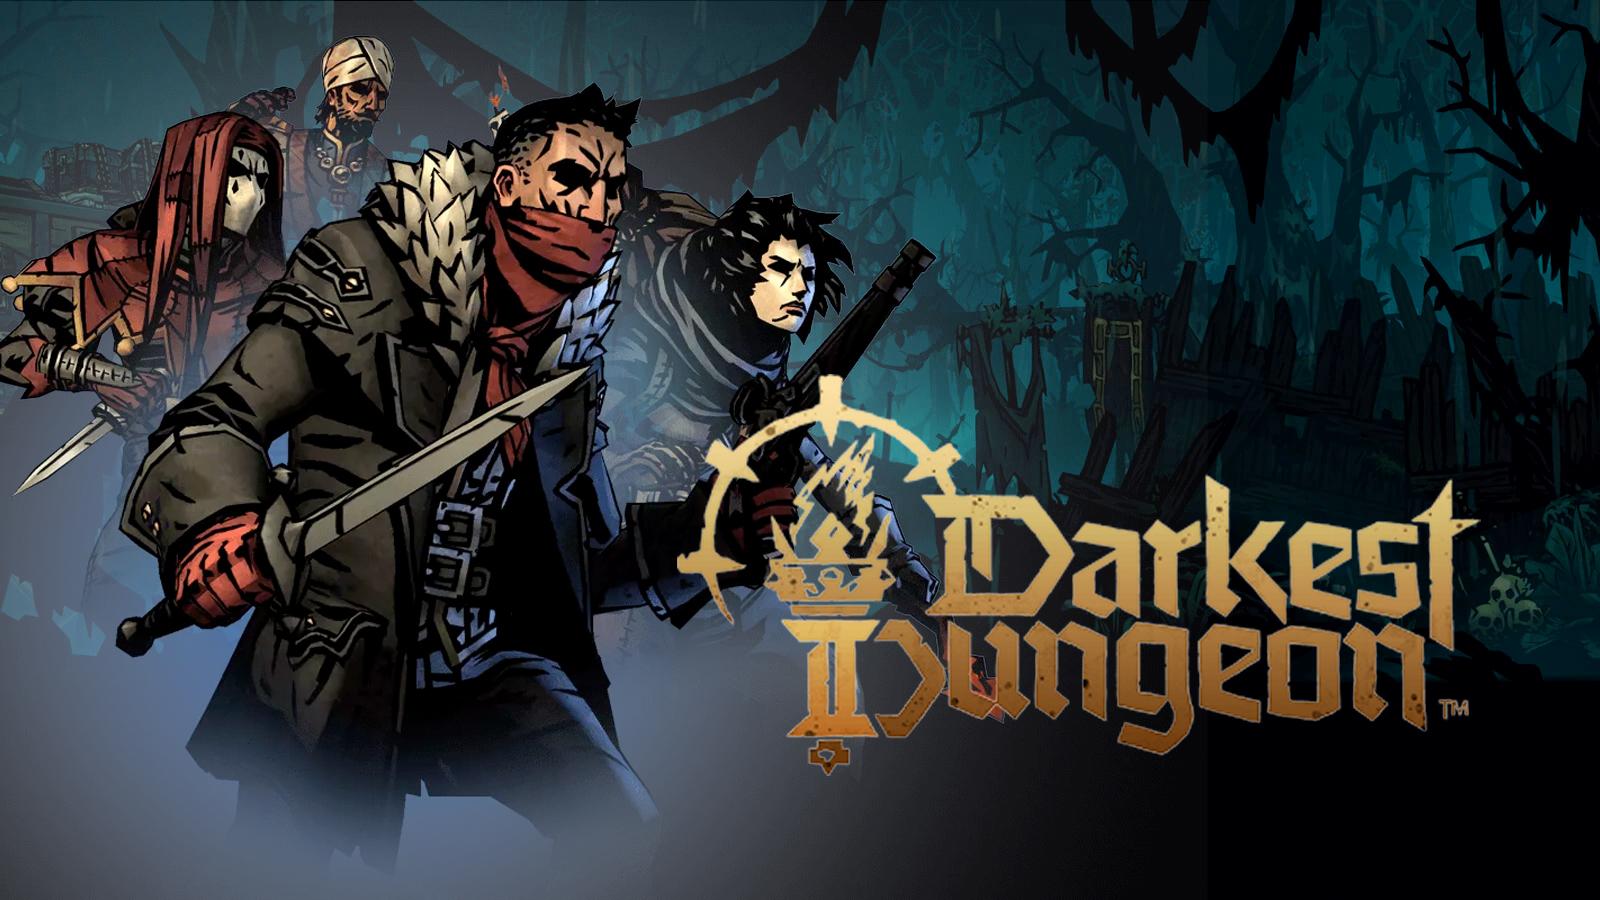 Darkest Dungeon 2 key art and logo